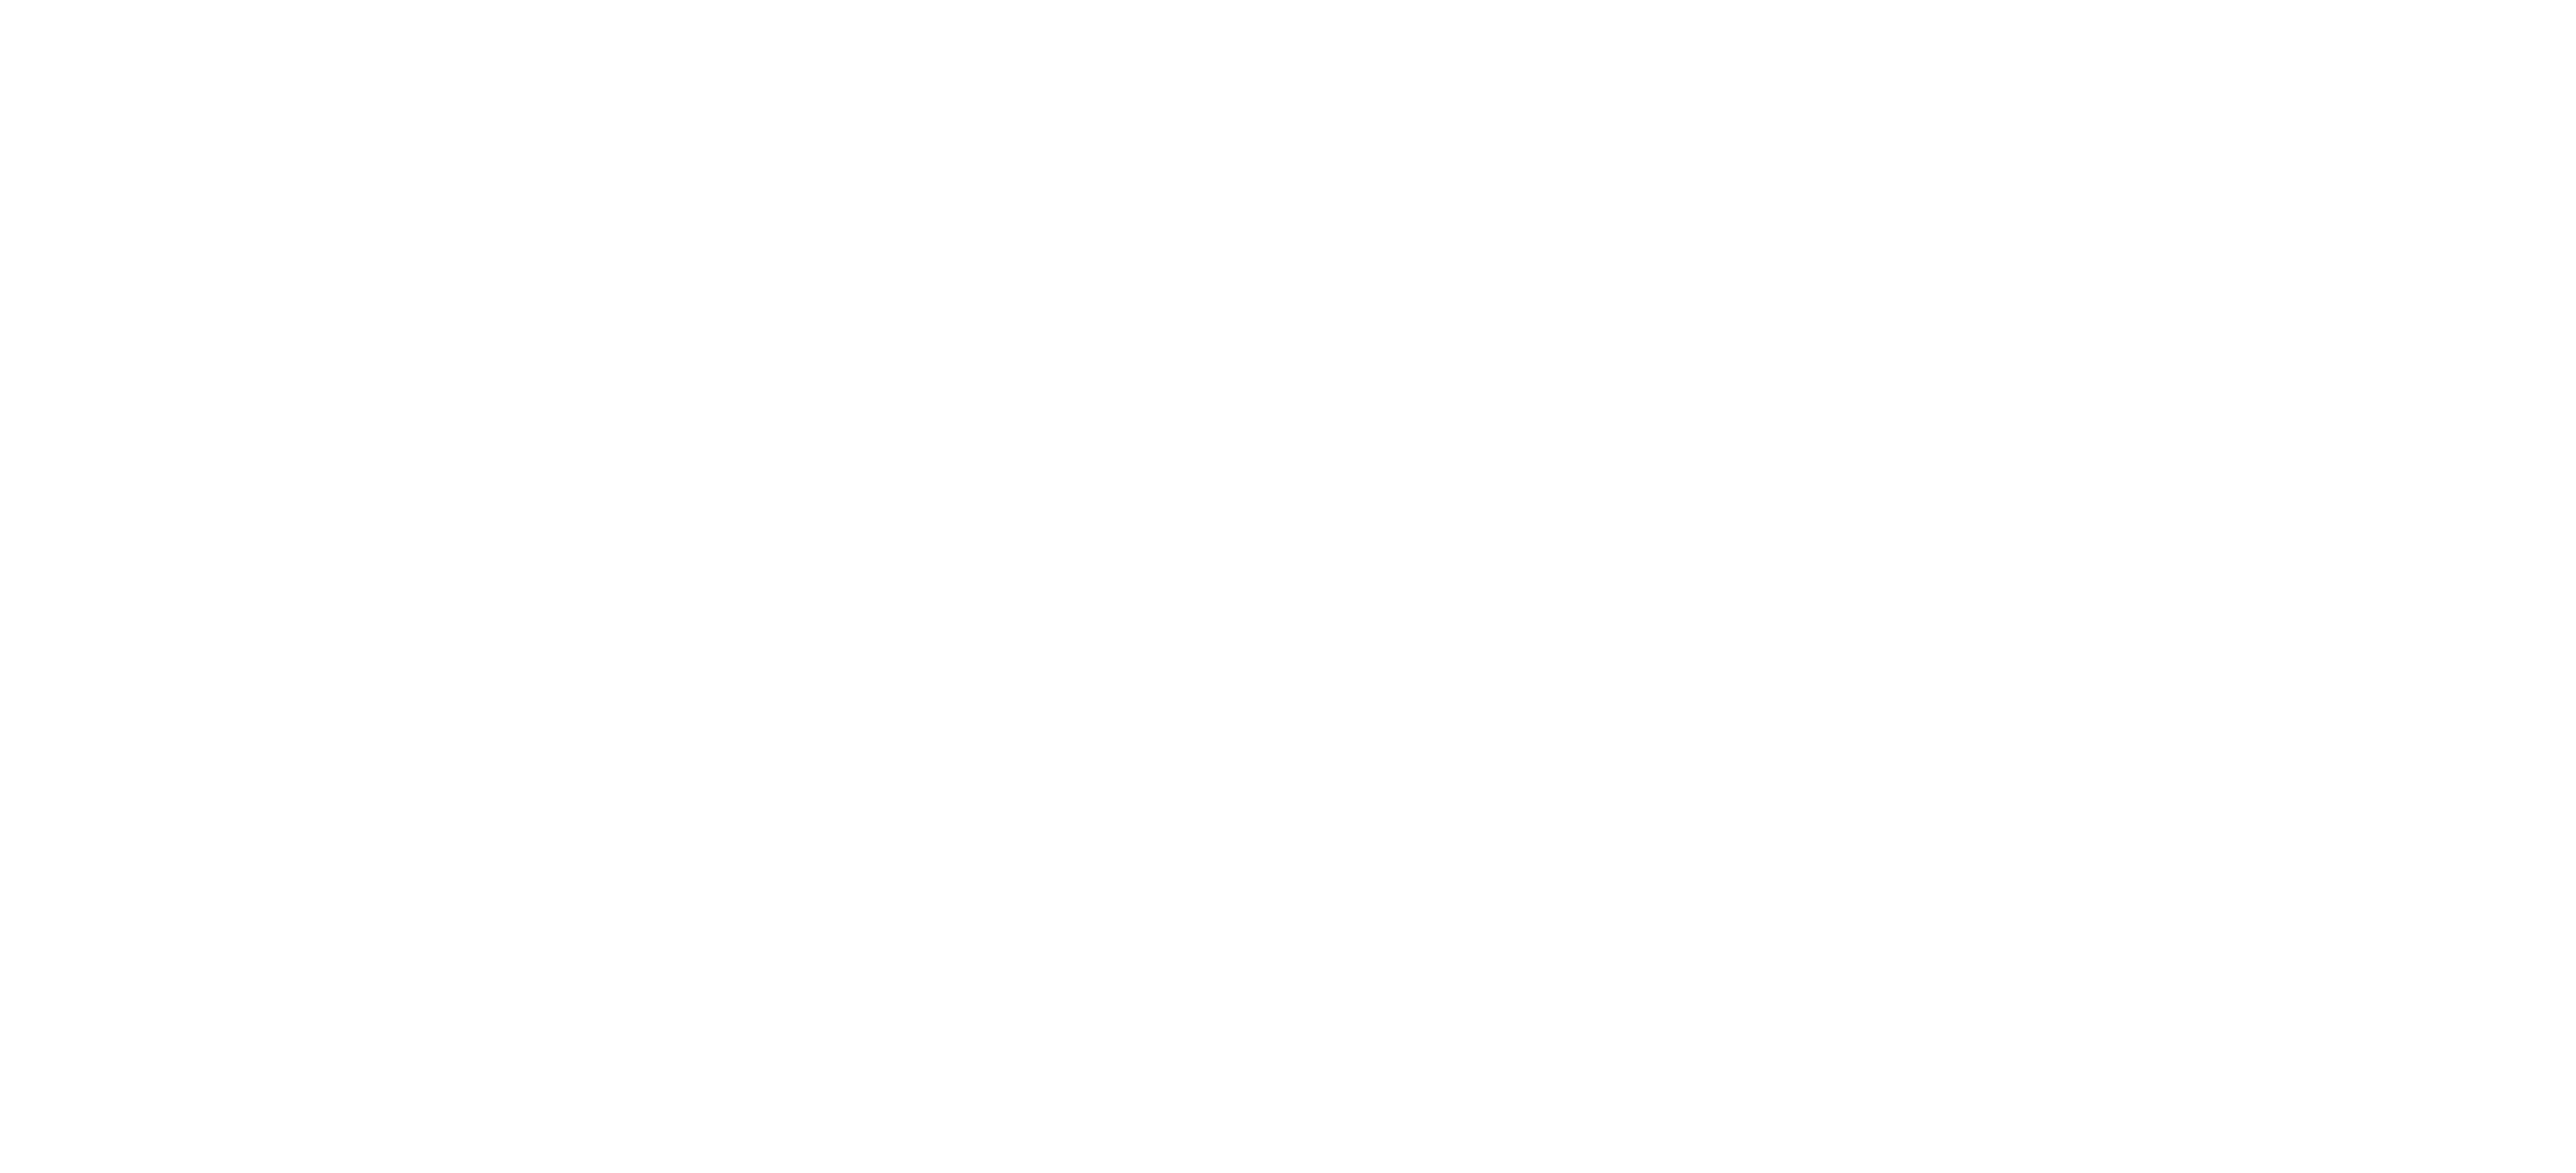 Believe in Olesk